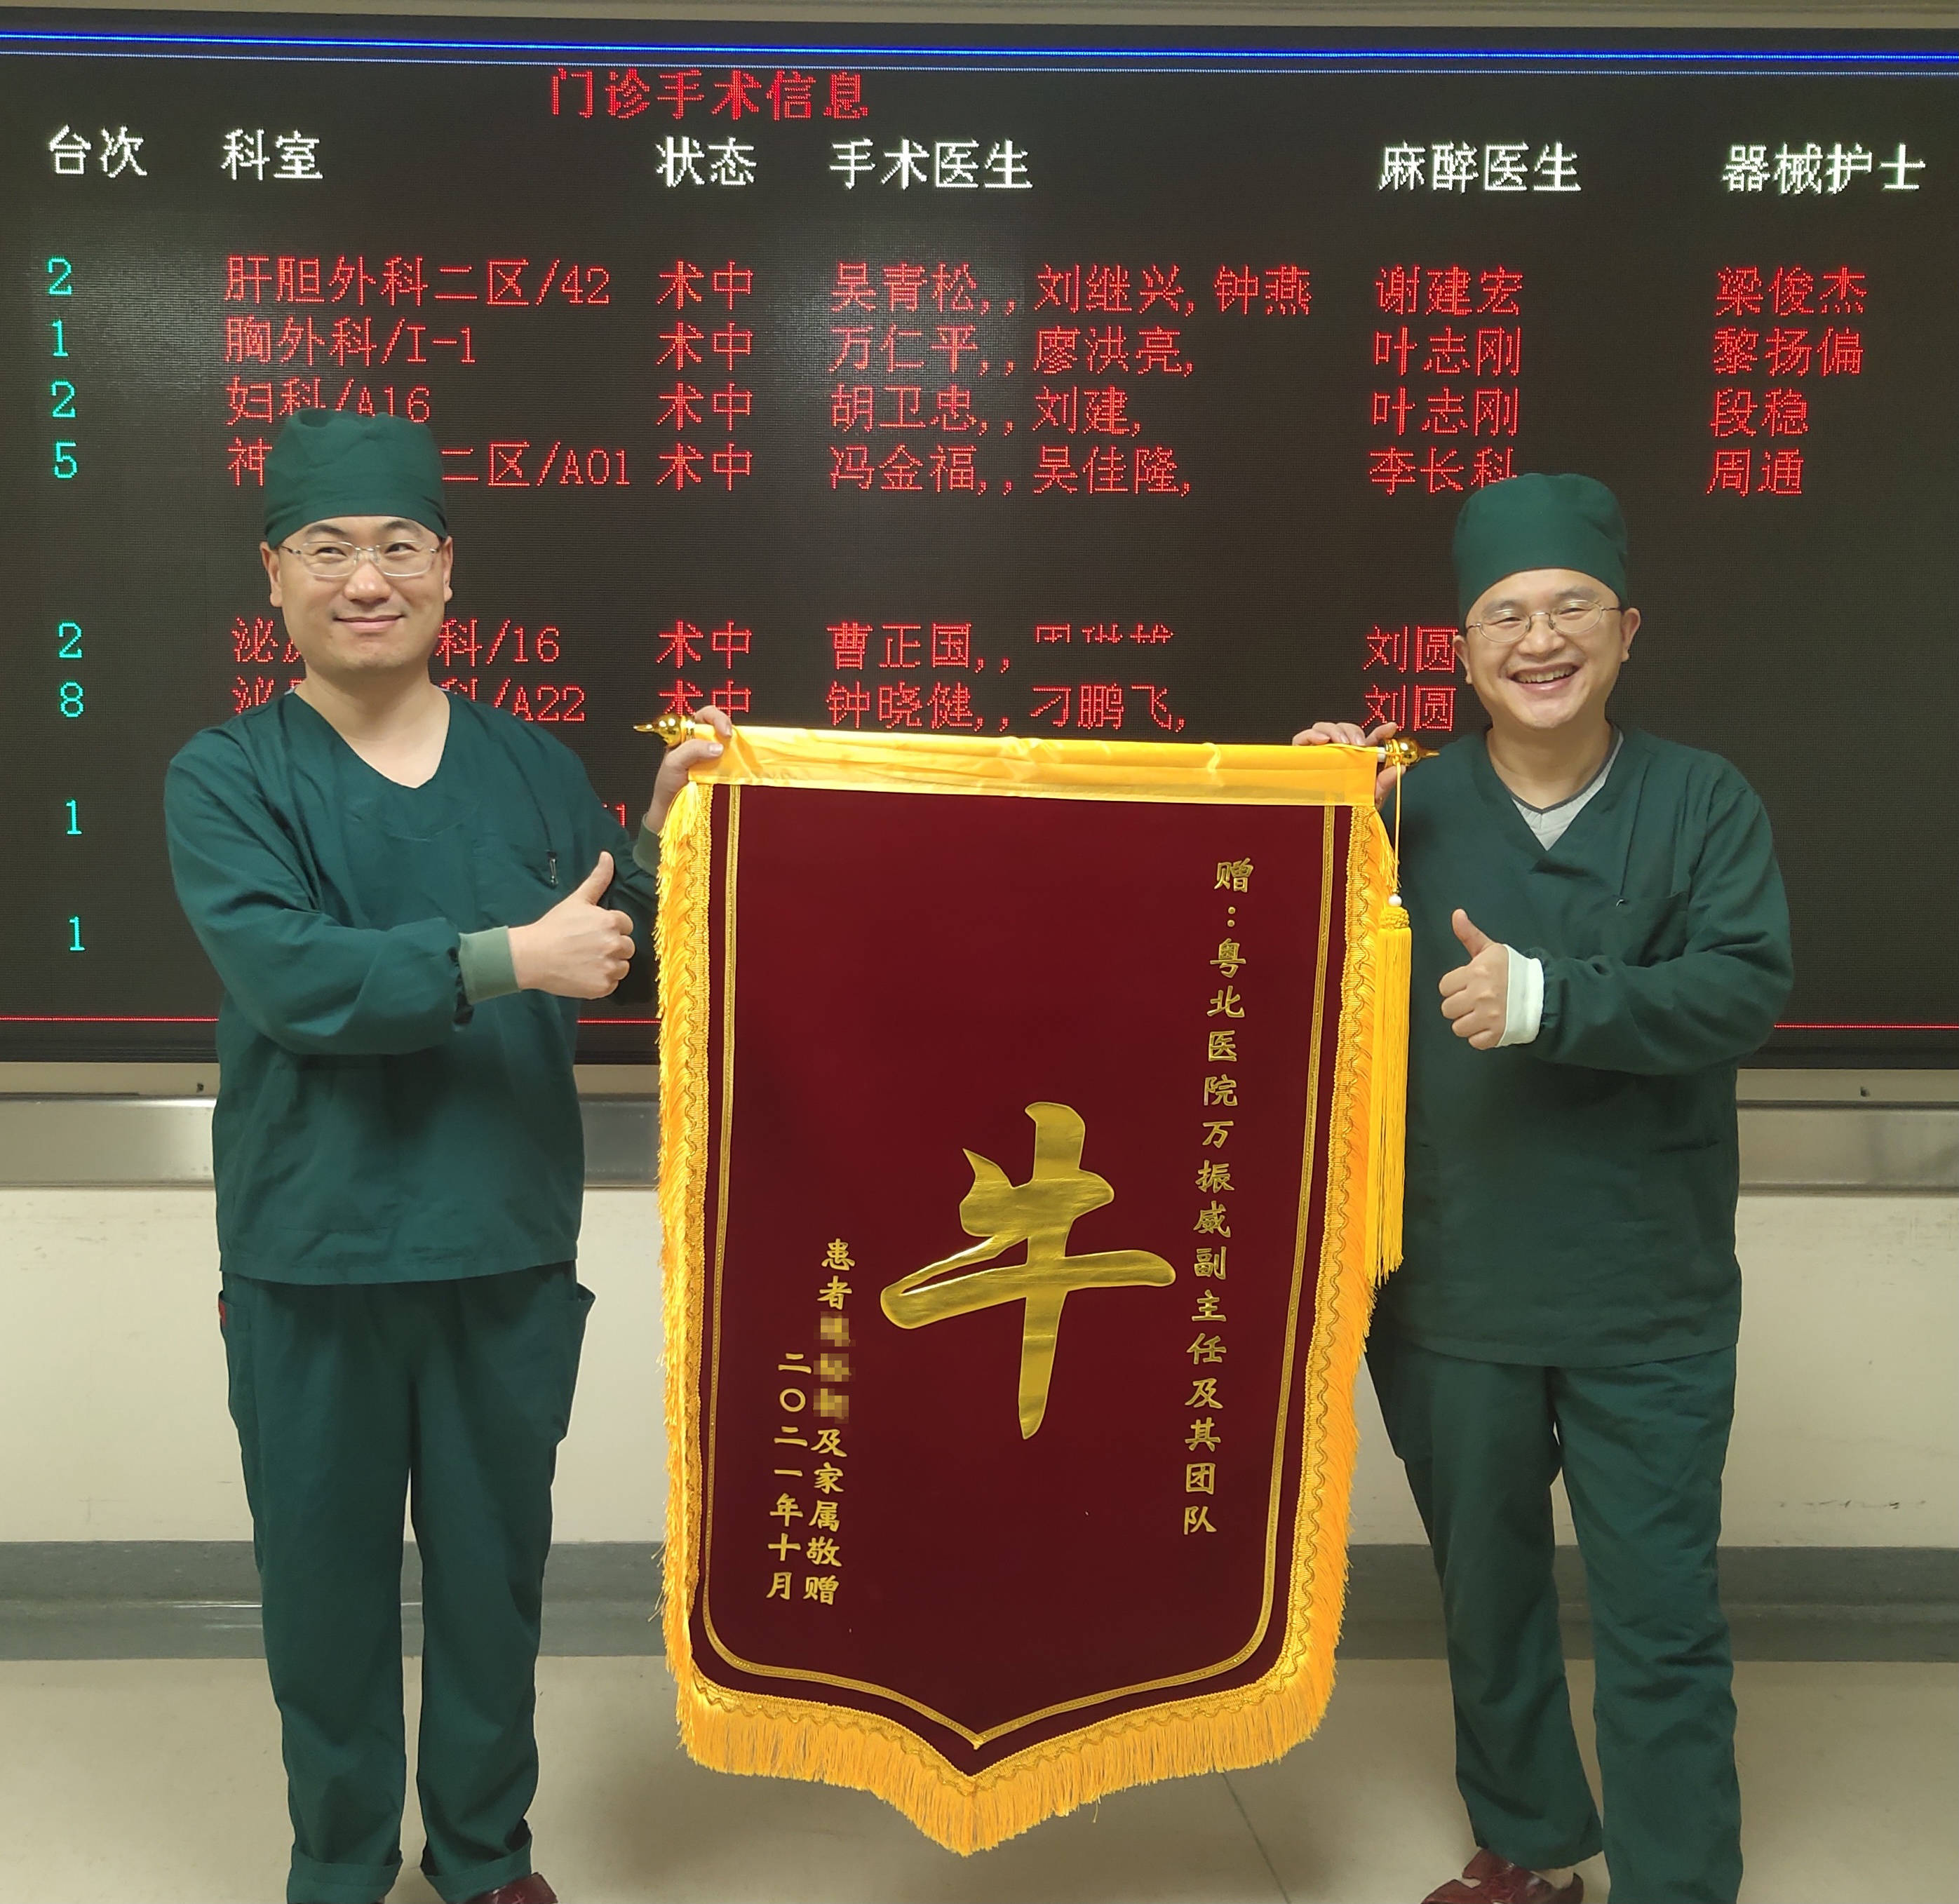 粤北医院医生收到特殊锦旗,背后故事很暖心